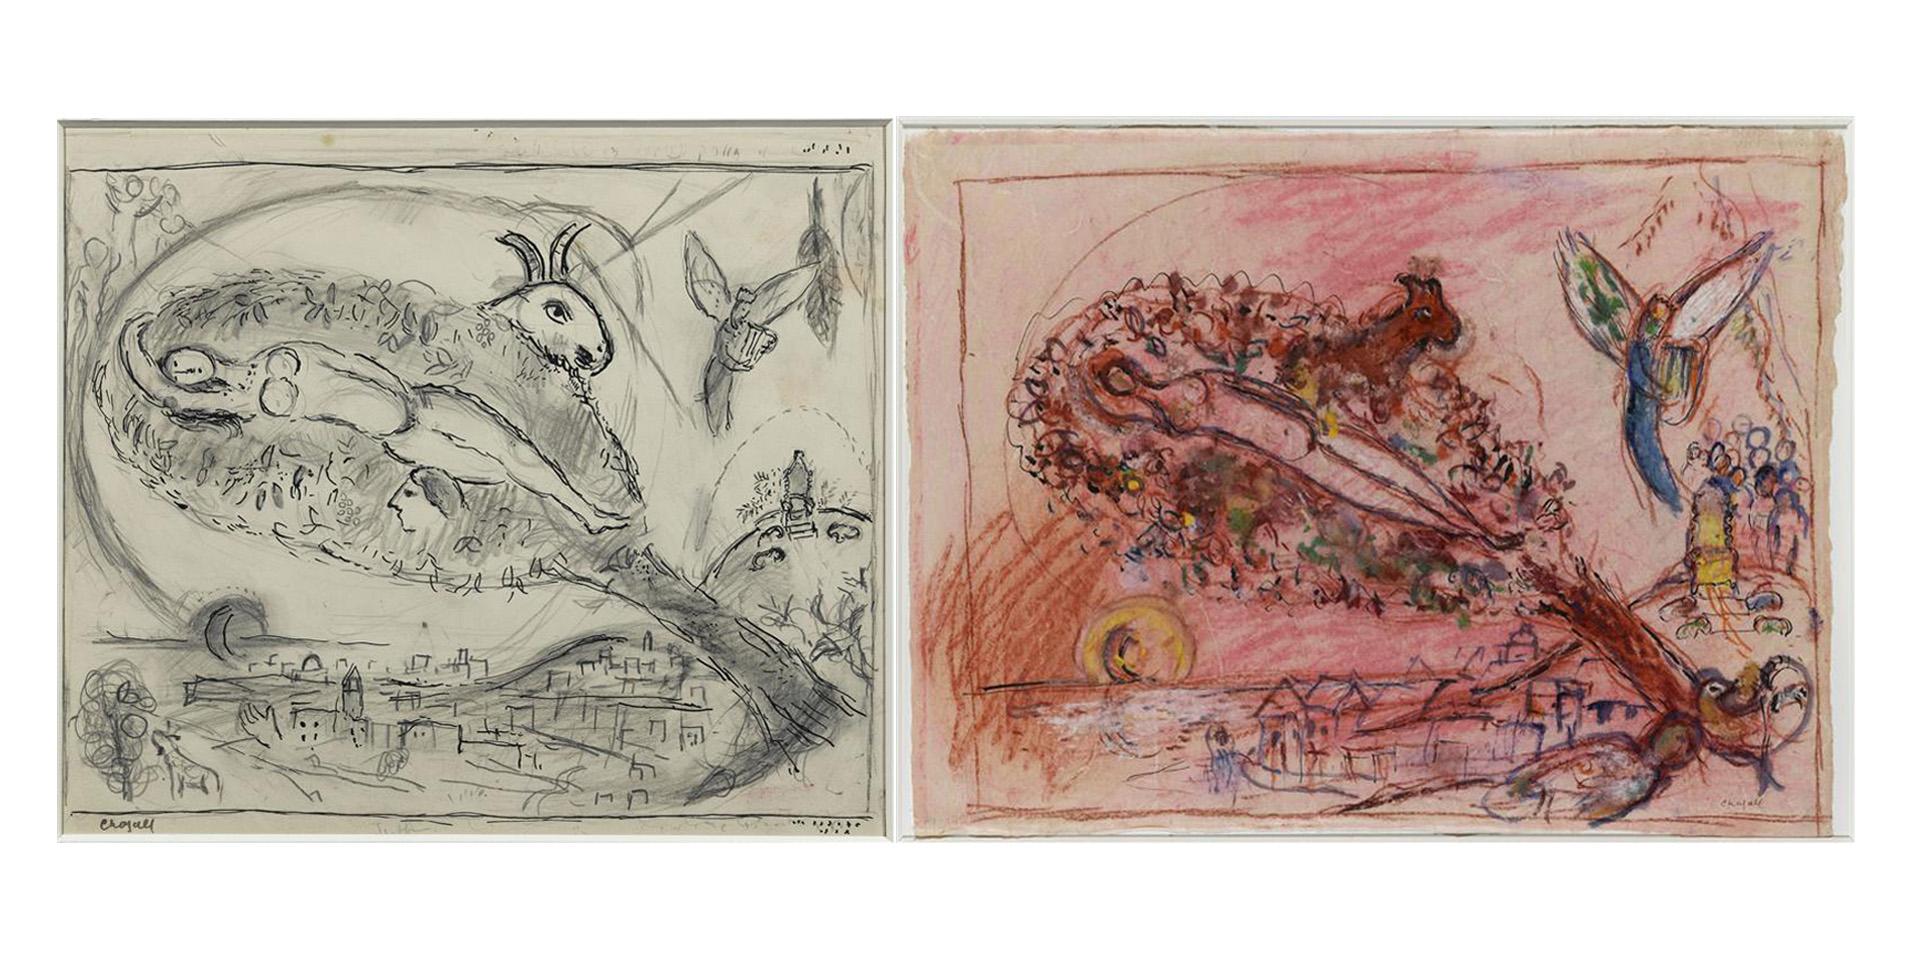 Marc Chagall, Cantique des Cantiques II, dessins préparatoires. Nice, musée national Marc Chagall (c) ADAGP, Paris, 2022